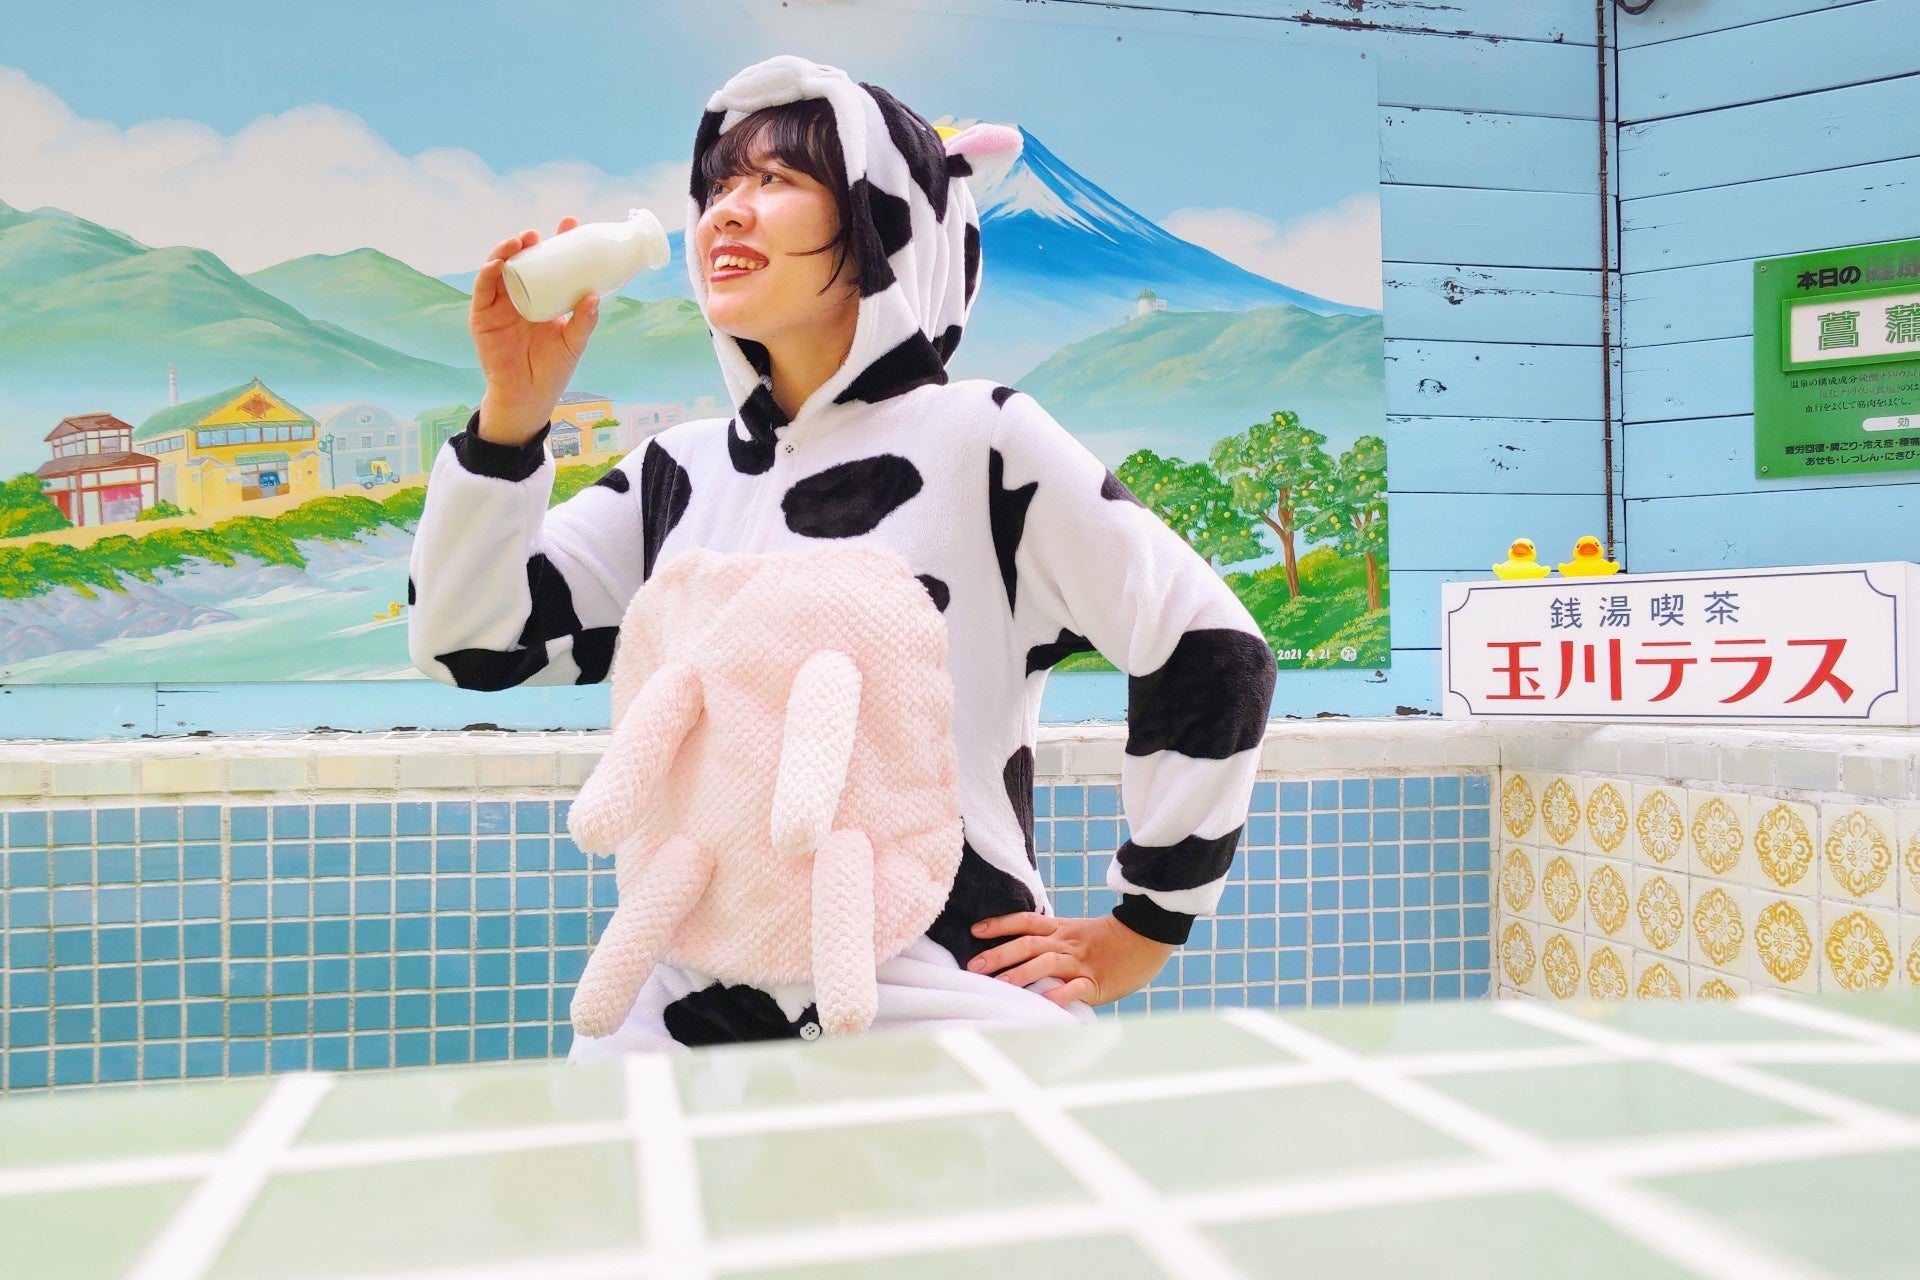 6月1日「世界牛乳の日」に合わせて、昭和レトロな温泉銭湯 玉川温泉で「牛乳週間」を開催。来館者に牛乳を配布のサブ画像1